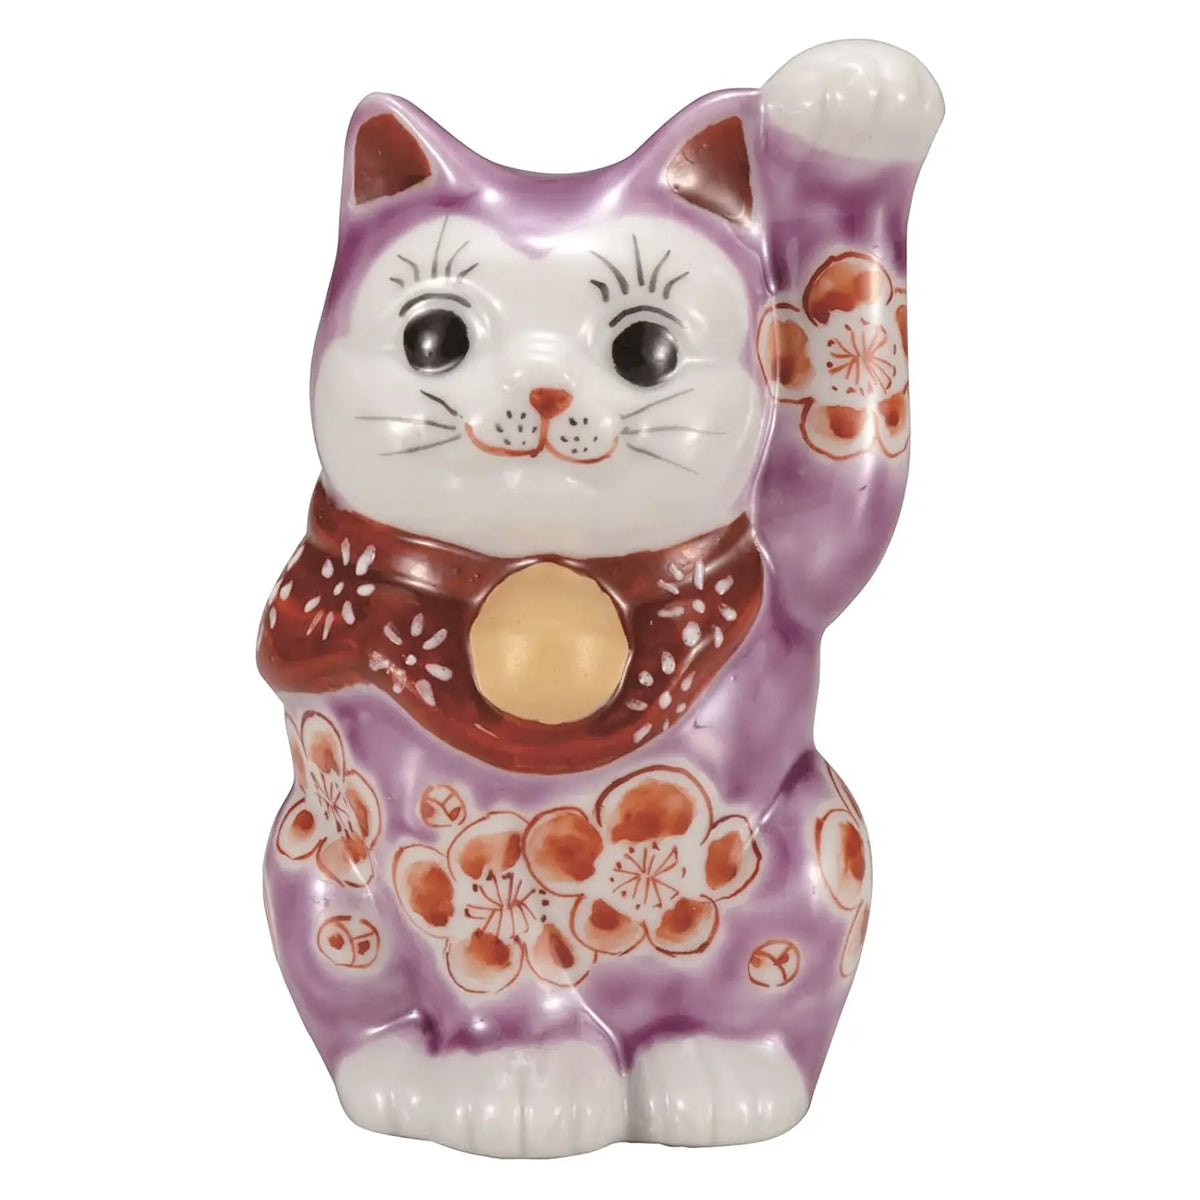 Kutani Ware Porcelain Maneki Neko Figurine Plum Blossom Purple 3.3-Go